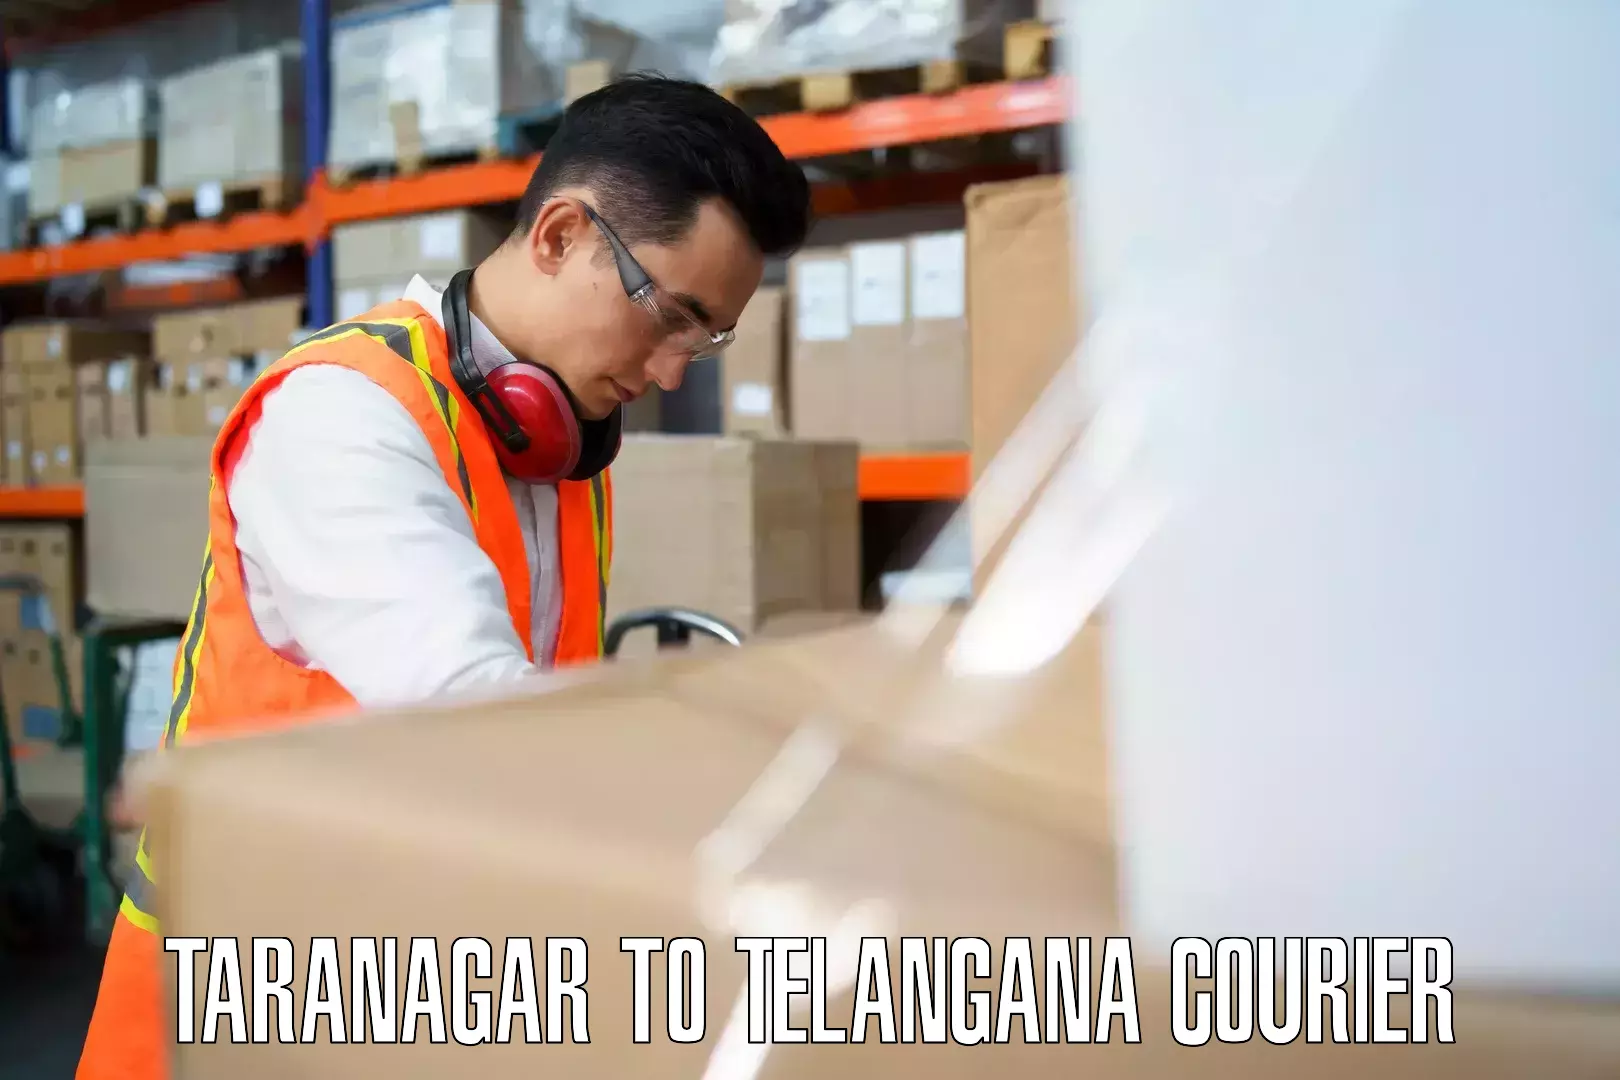 Baggage shipping experts Taranagar to Jogulamba Gadwal